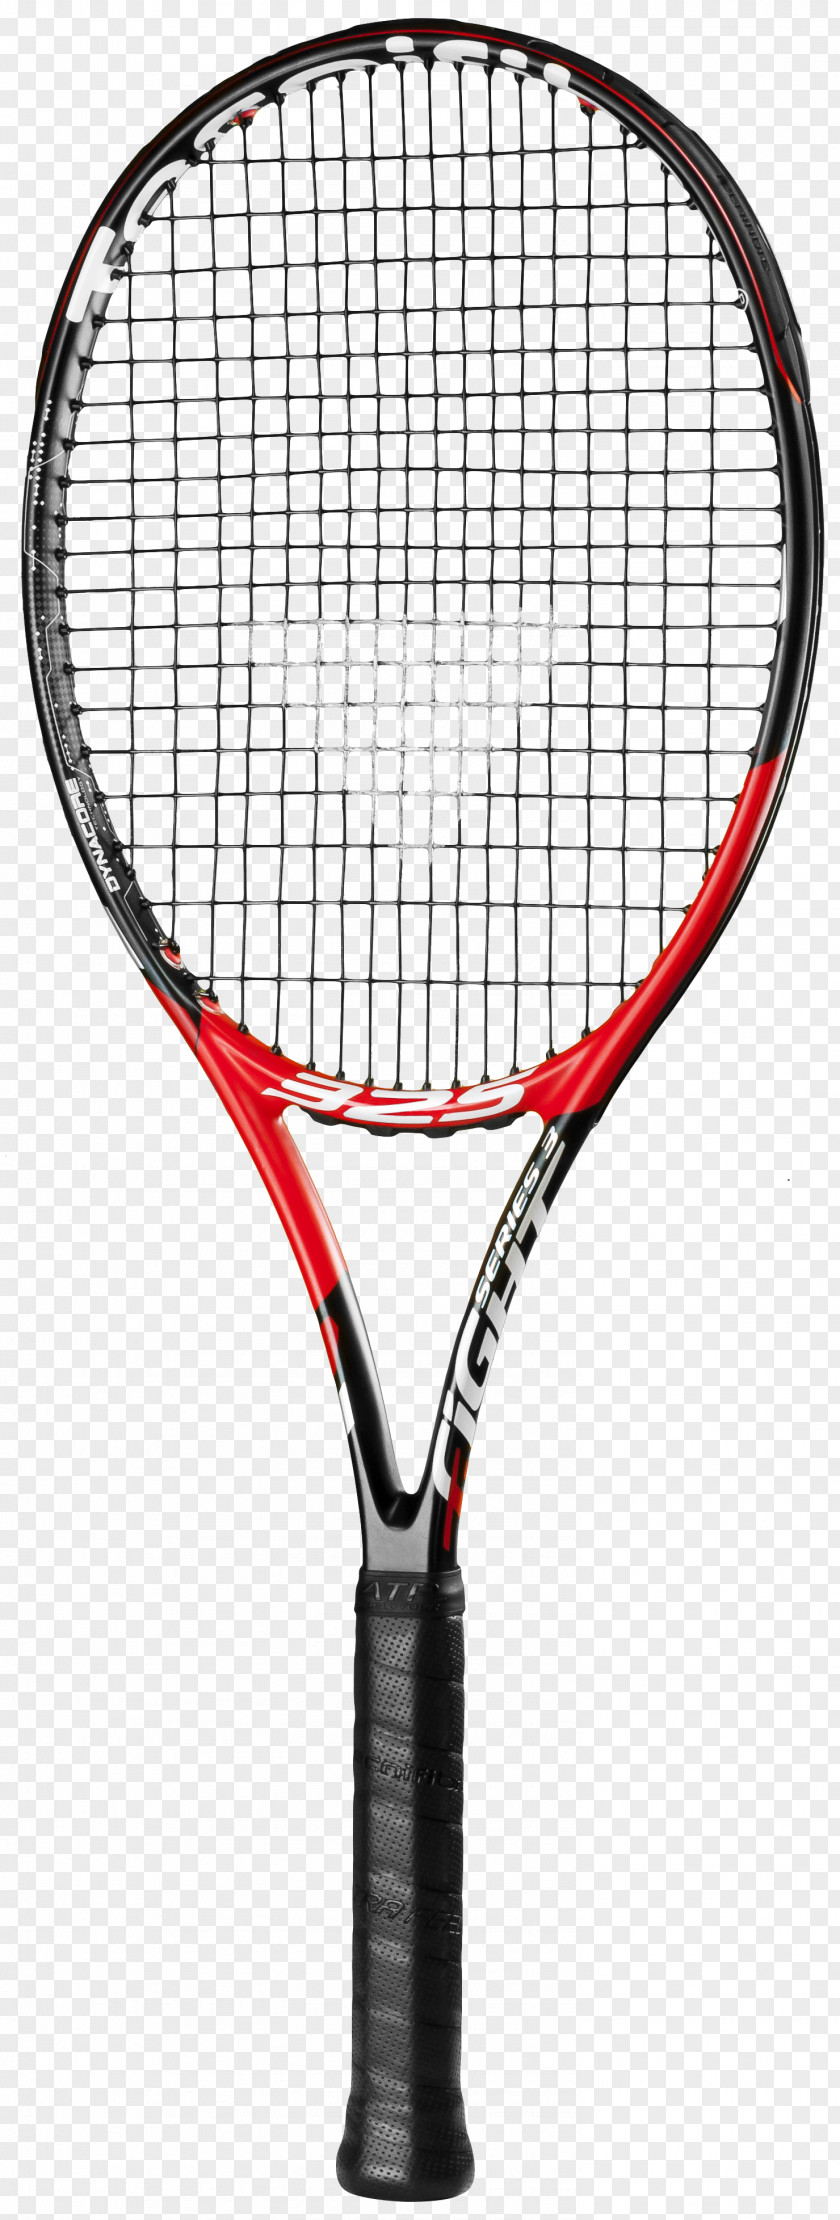 Tennis Tecnifibre Racket Head Babolat PNG